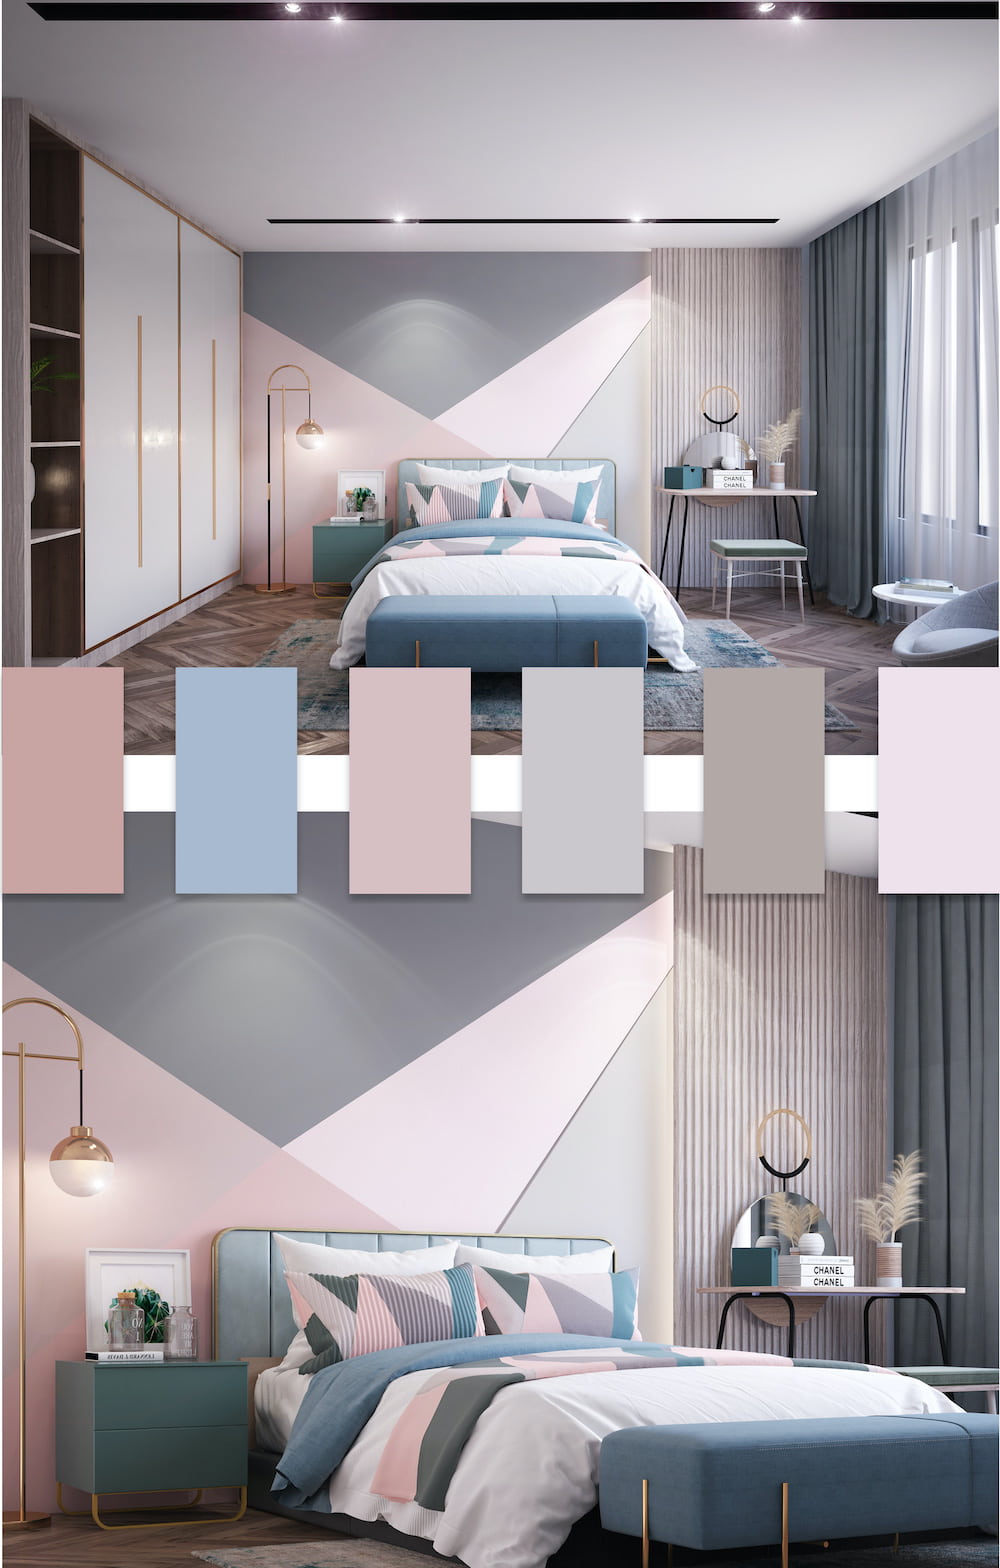 Khi sử dụng sắc hồng nhẹ nhàng lãng mạn trong nội thất có thể tạo ra bầu không khí thư giãn cho căn phòng